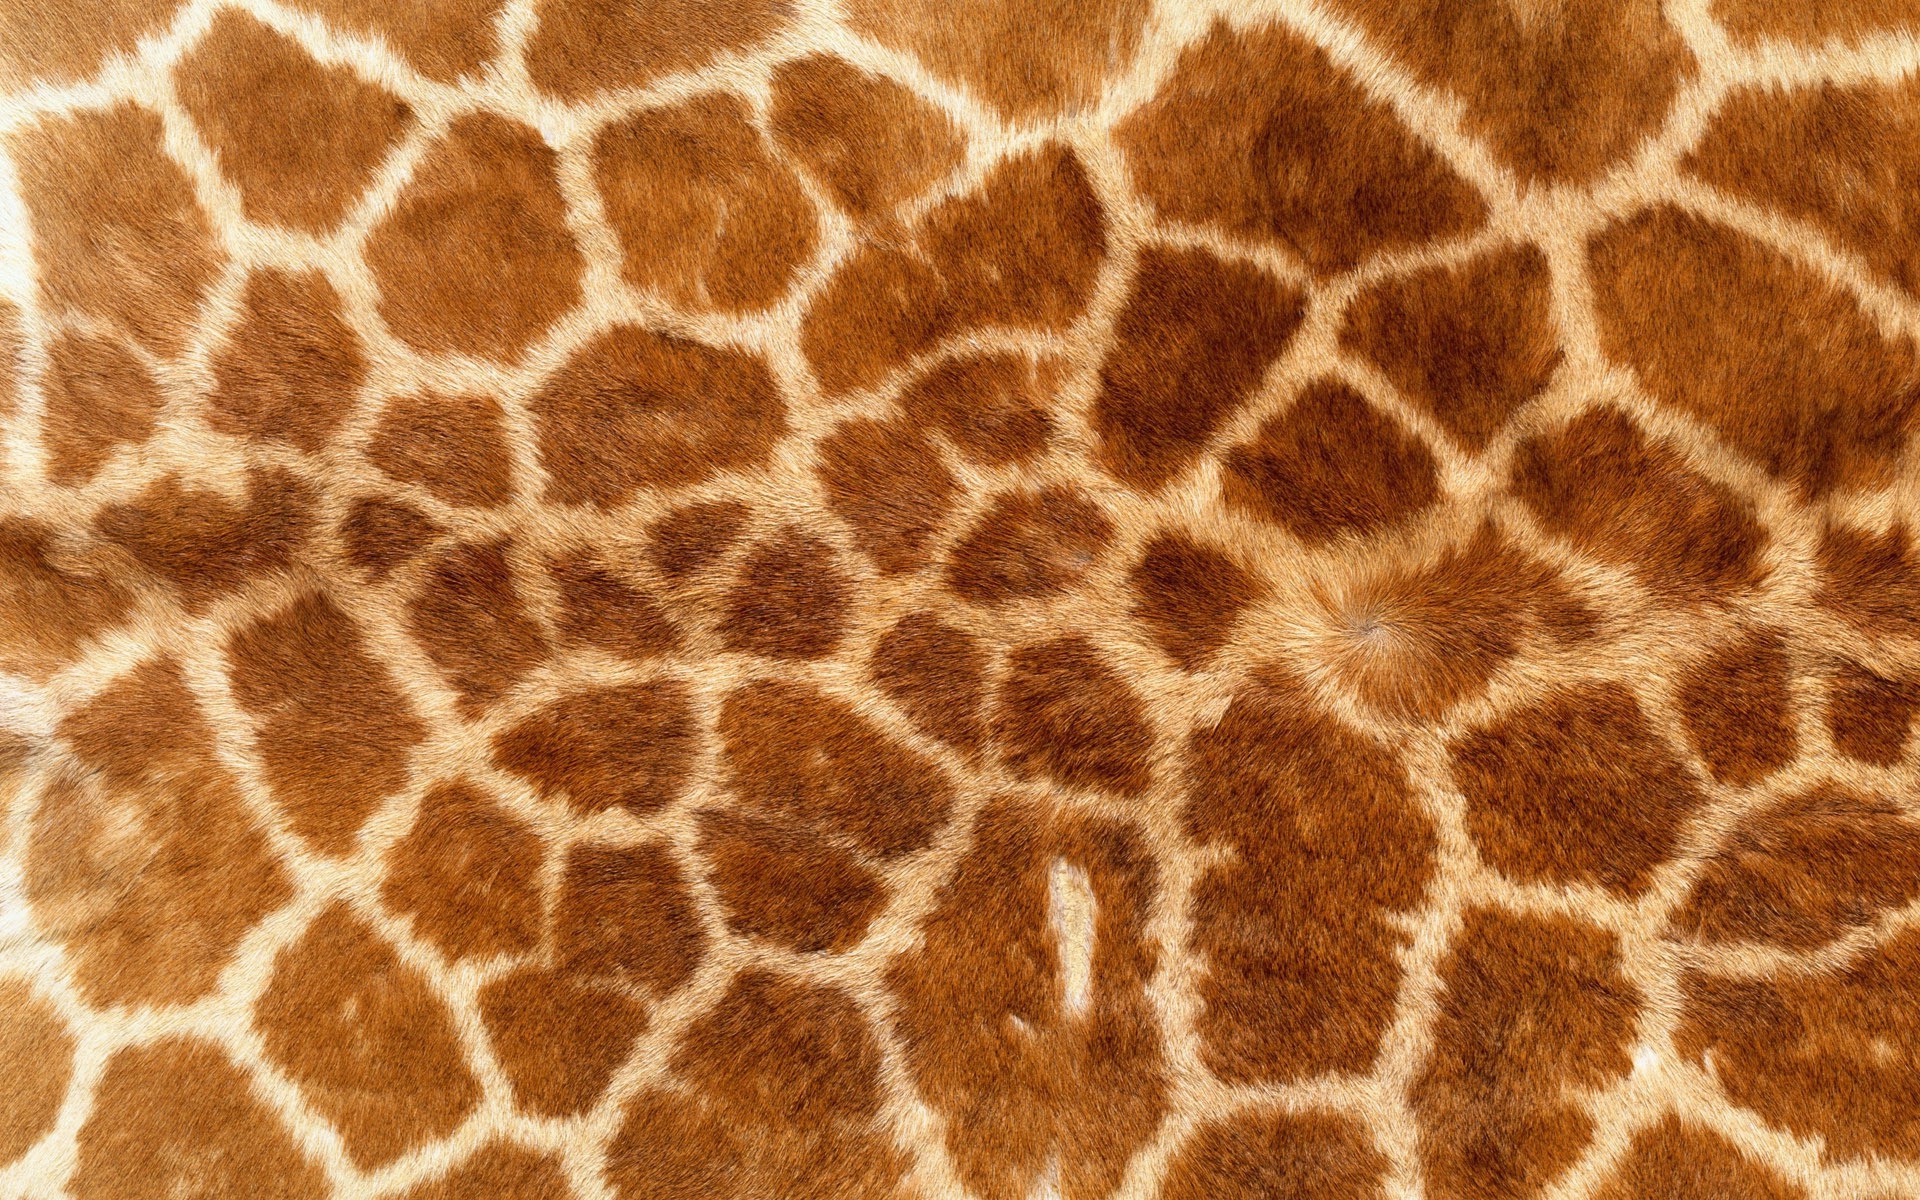 Giraffe Print Seamless Pattern Texture Wallpaper Stock Vector Royalty  Free 277767815  Shutterstock